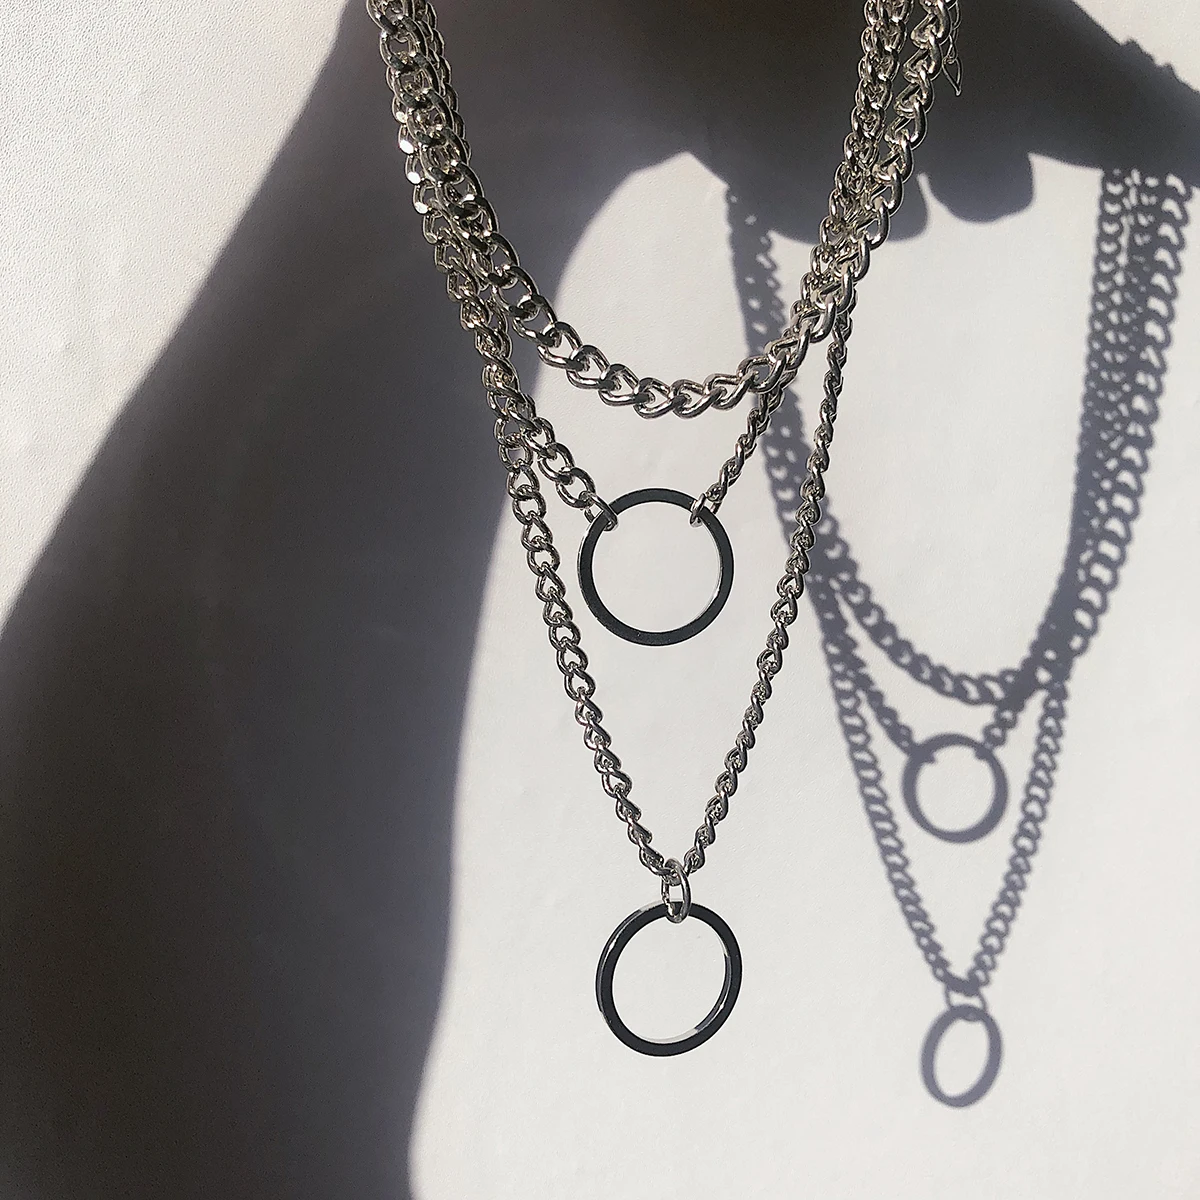 SHIXIN панк многослойное Ожерелье Золотая/серебряная цепочка с круговой подвеской ожерелье для женщин хип-хоп ожерелье цепочка на шею